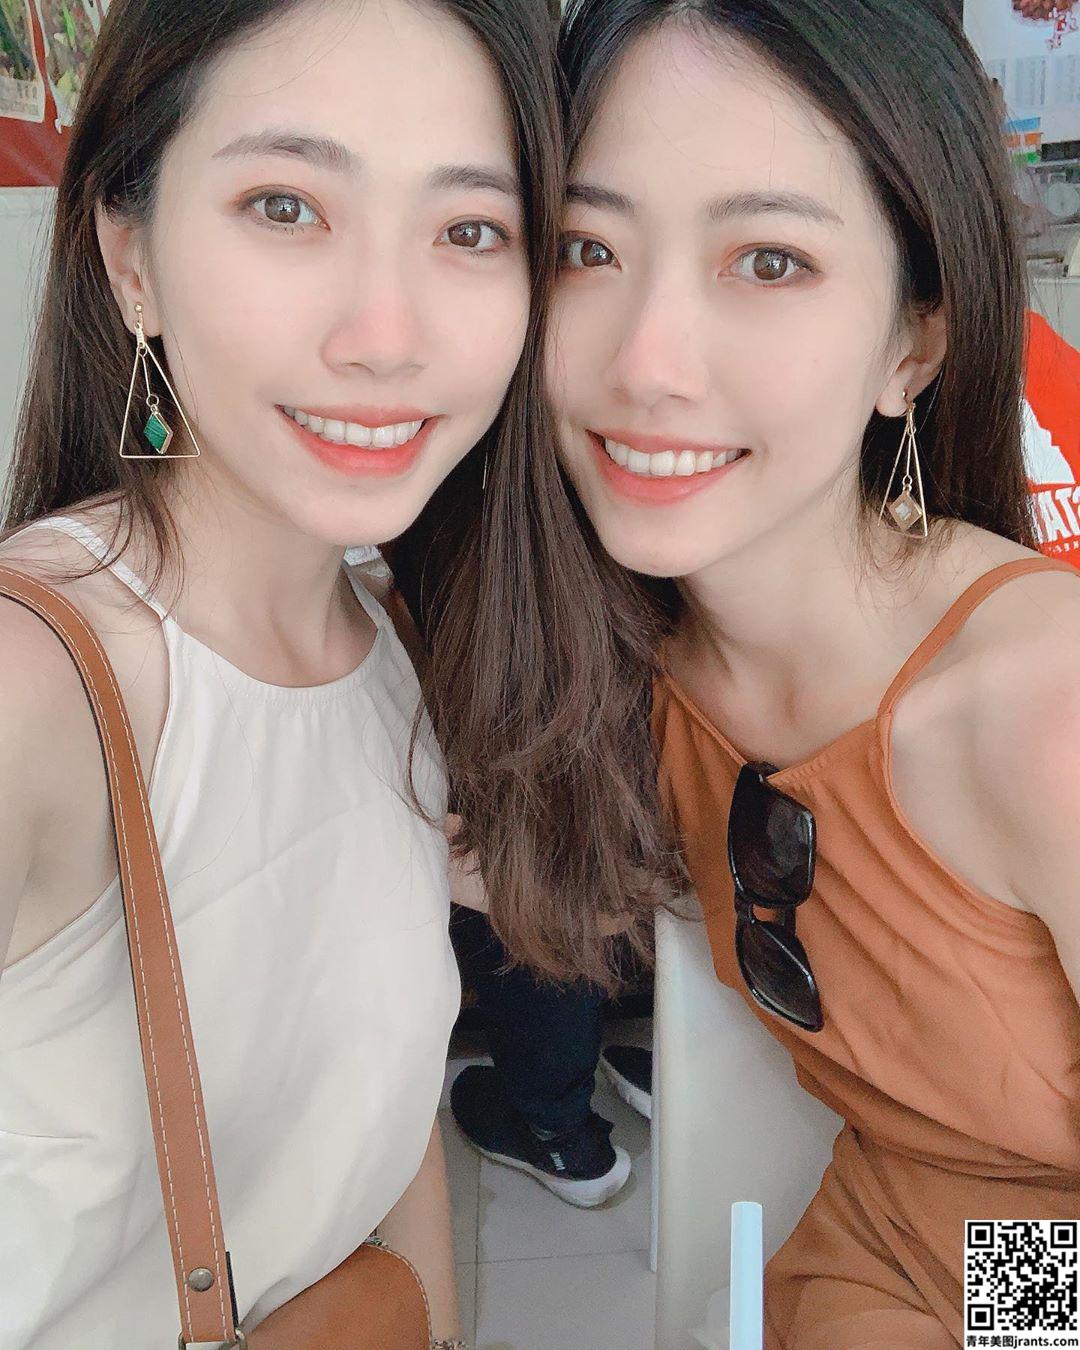 甜美「双胞胎」Twins shin谷谷 看了有恋爱的好滋味 (20P)